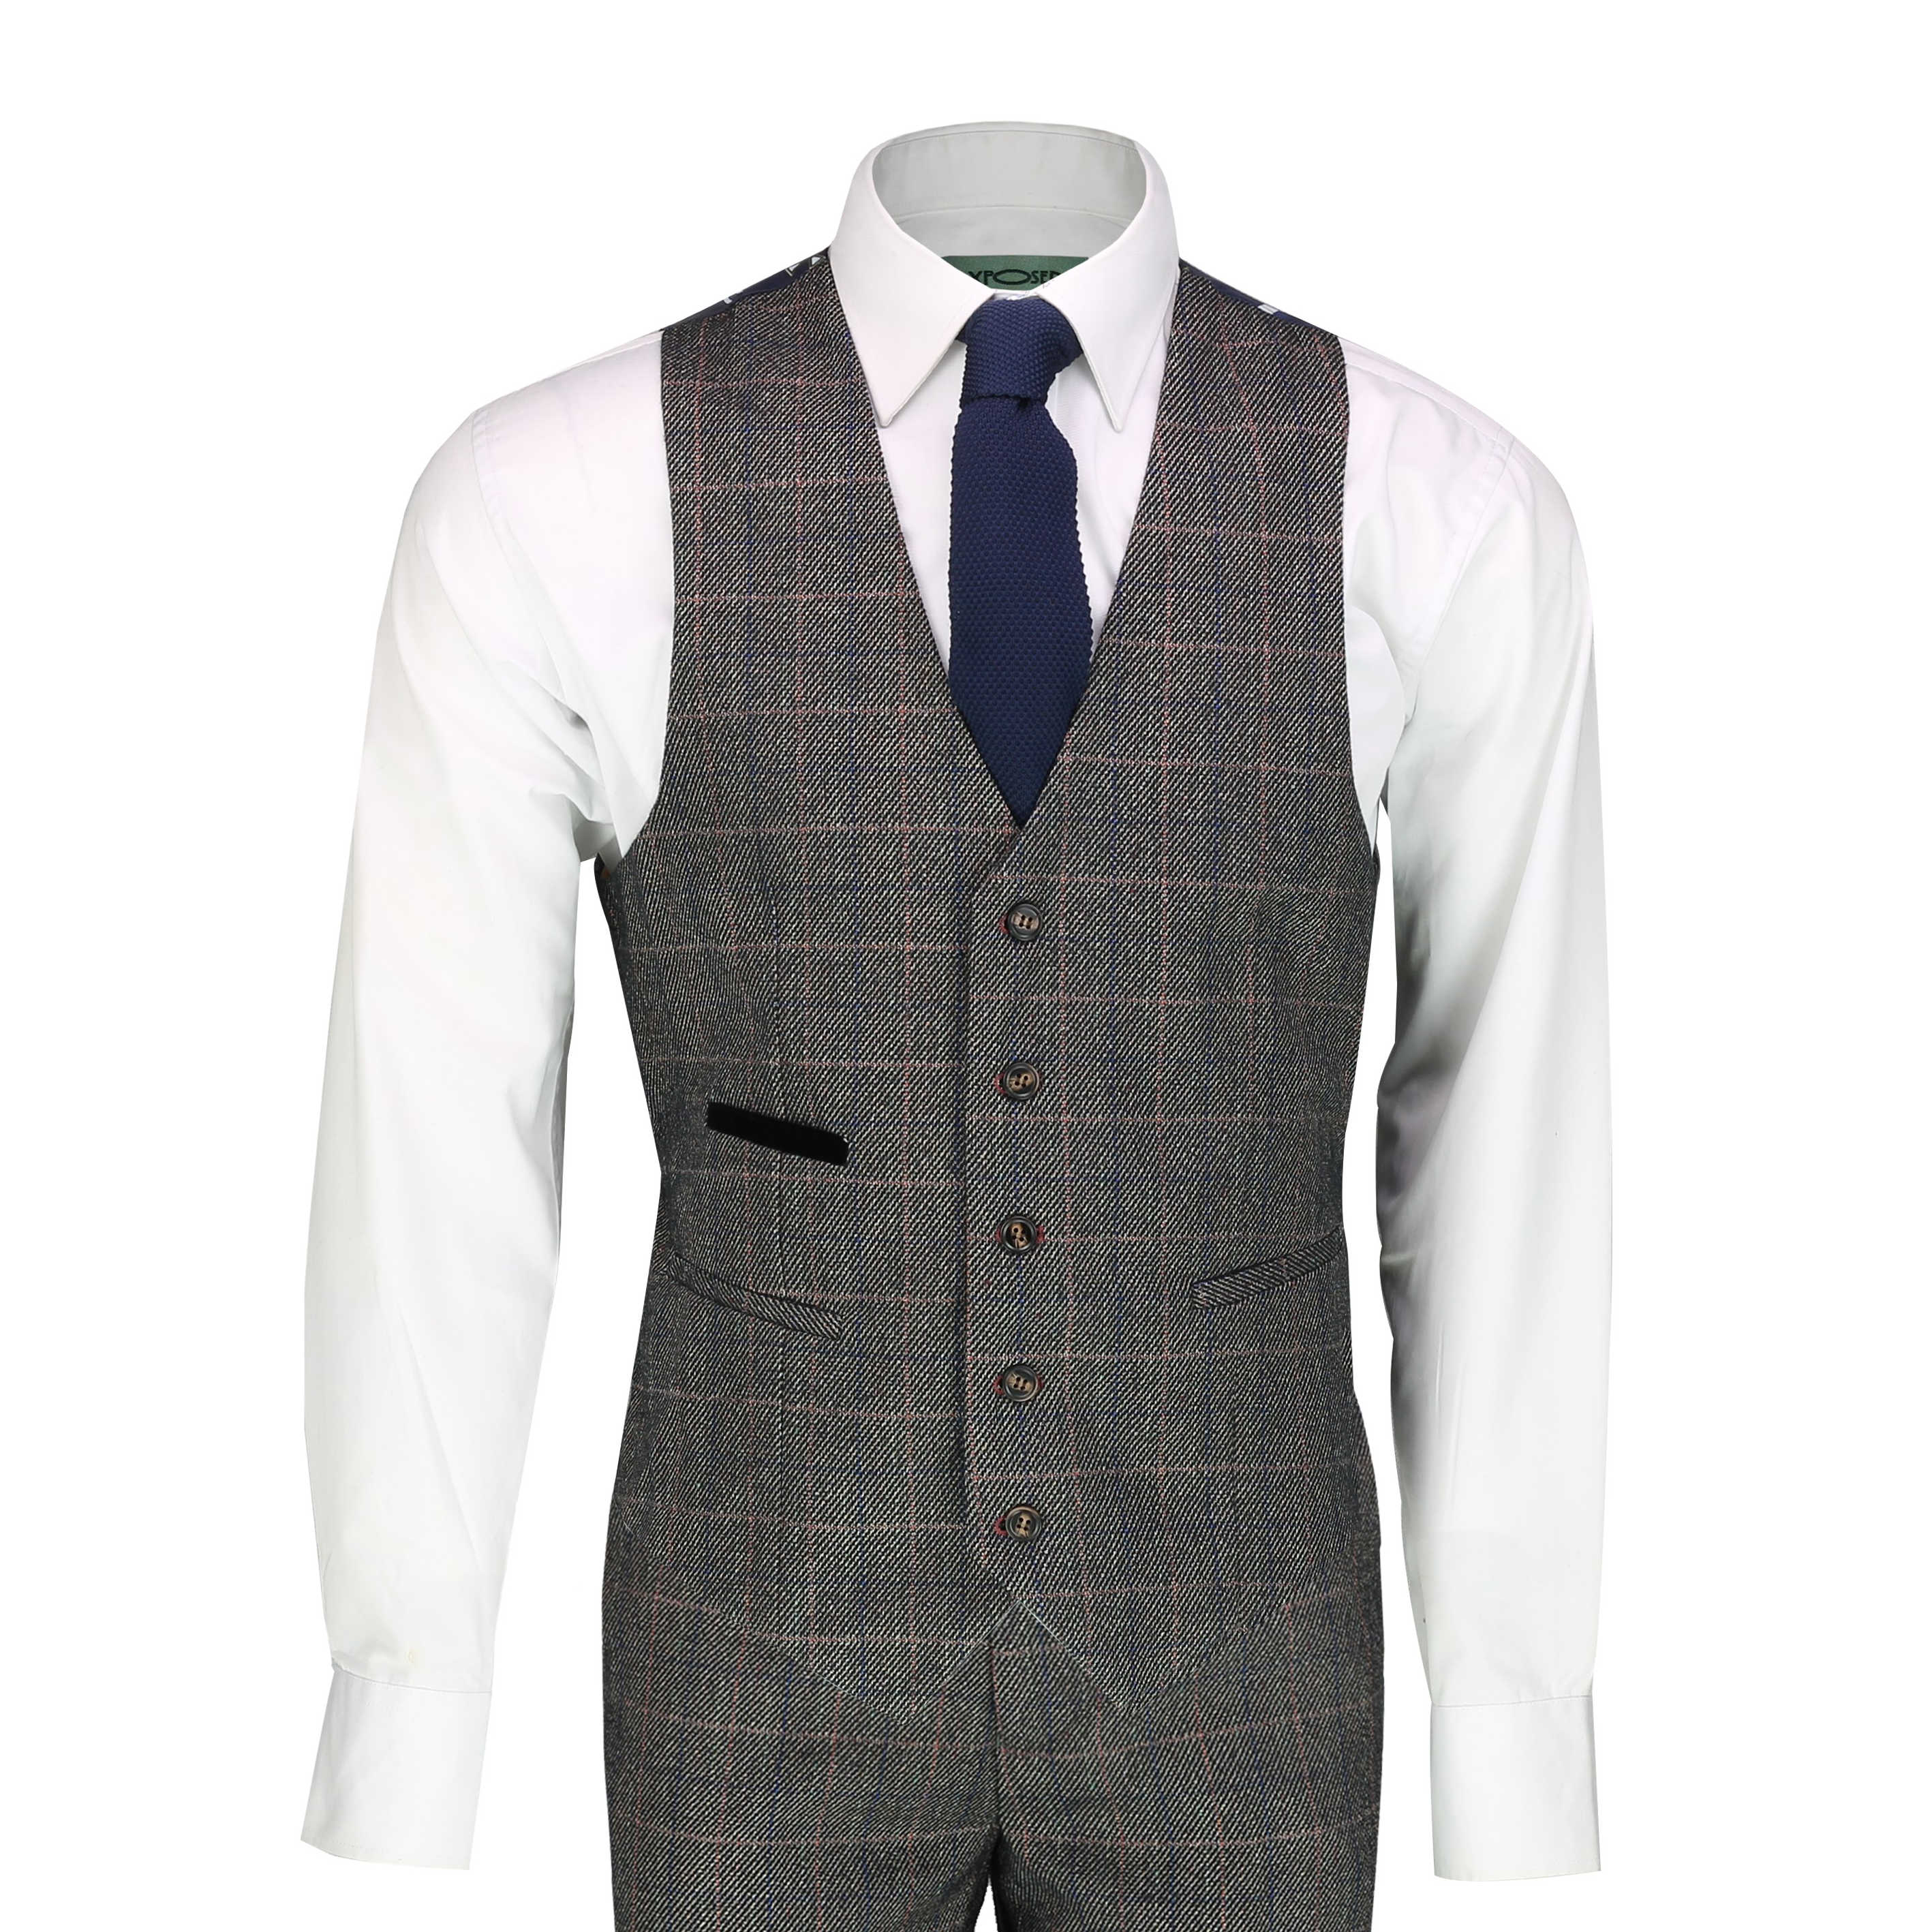 Mens Herringbone Tweed Check 3 Piece Suit Smart Classic 1920 Retro Tailored Fit Ebay